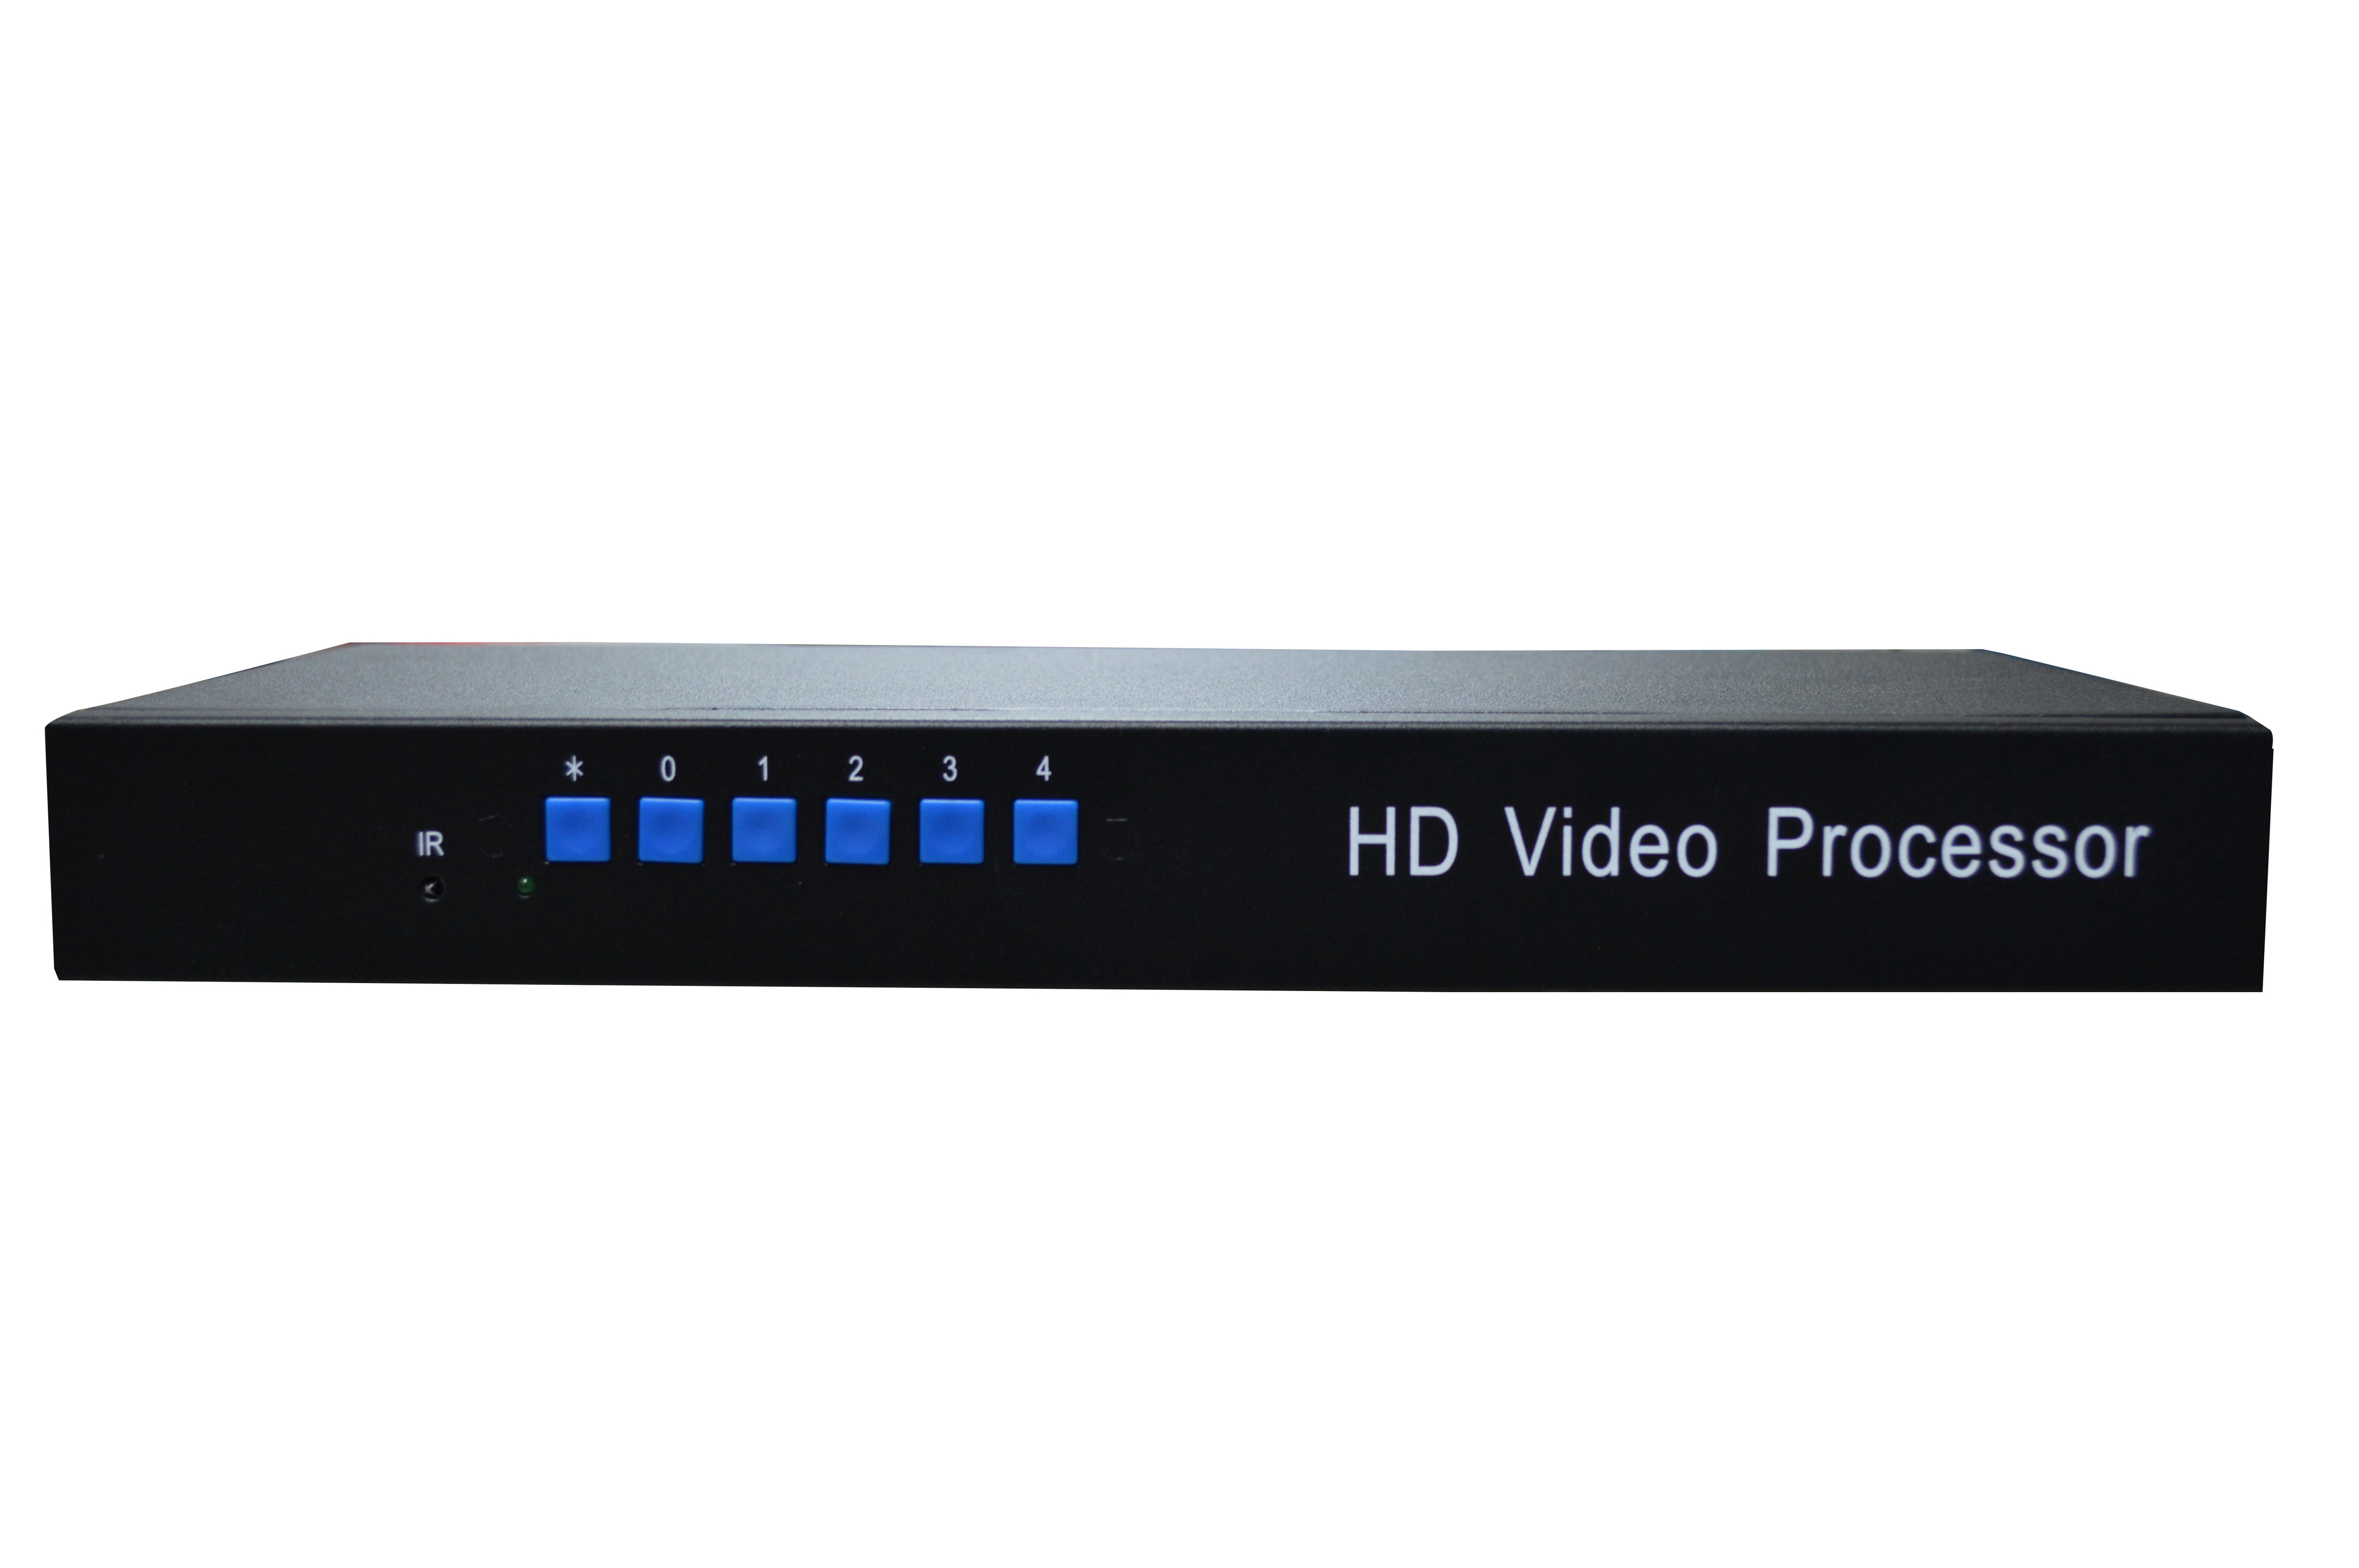 HDMI/VGA)高清画面分割器- 高清画面分割器